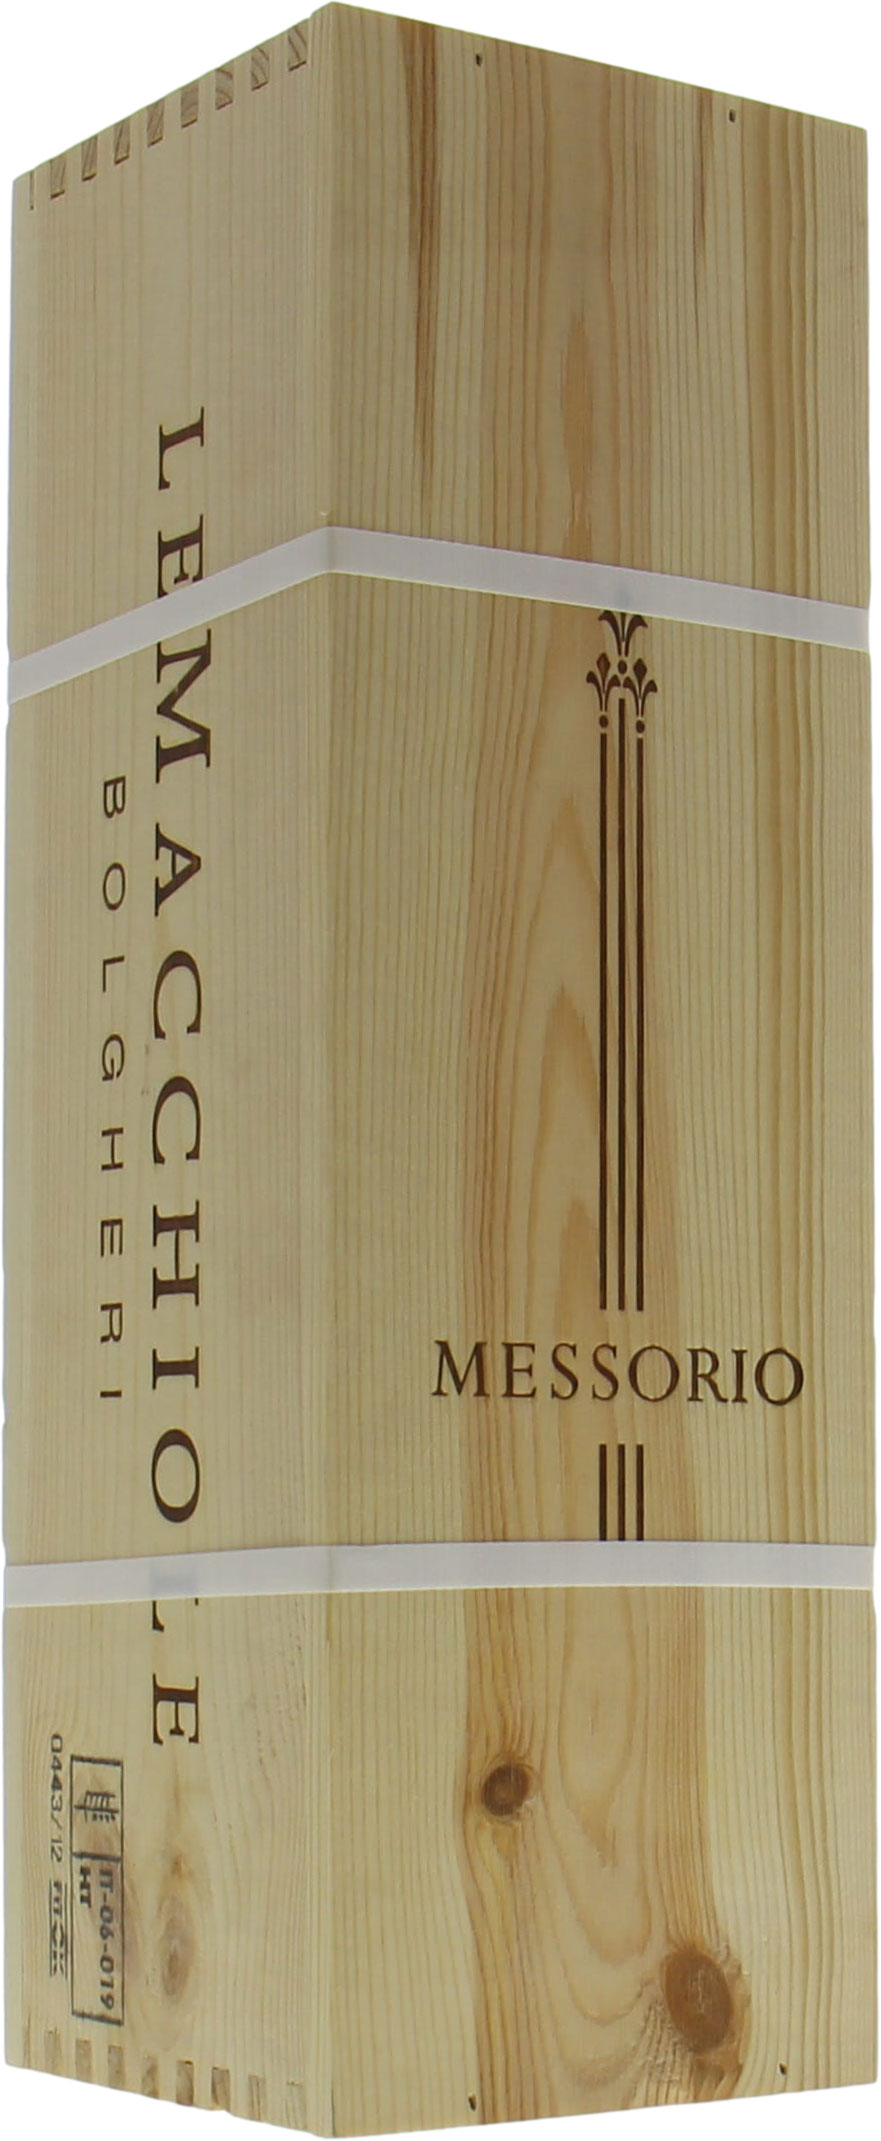 Le Macchiole - Messorio 2011